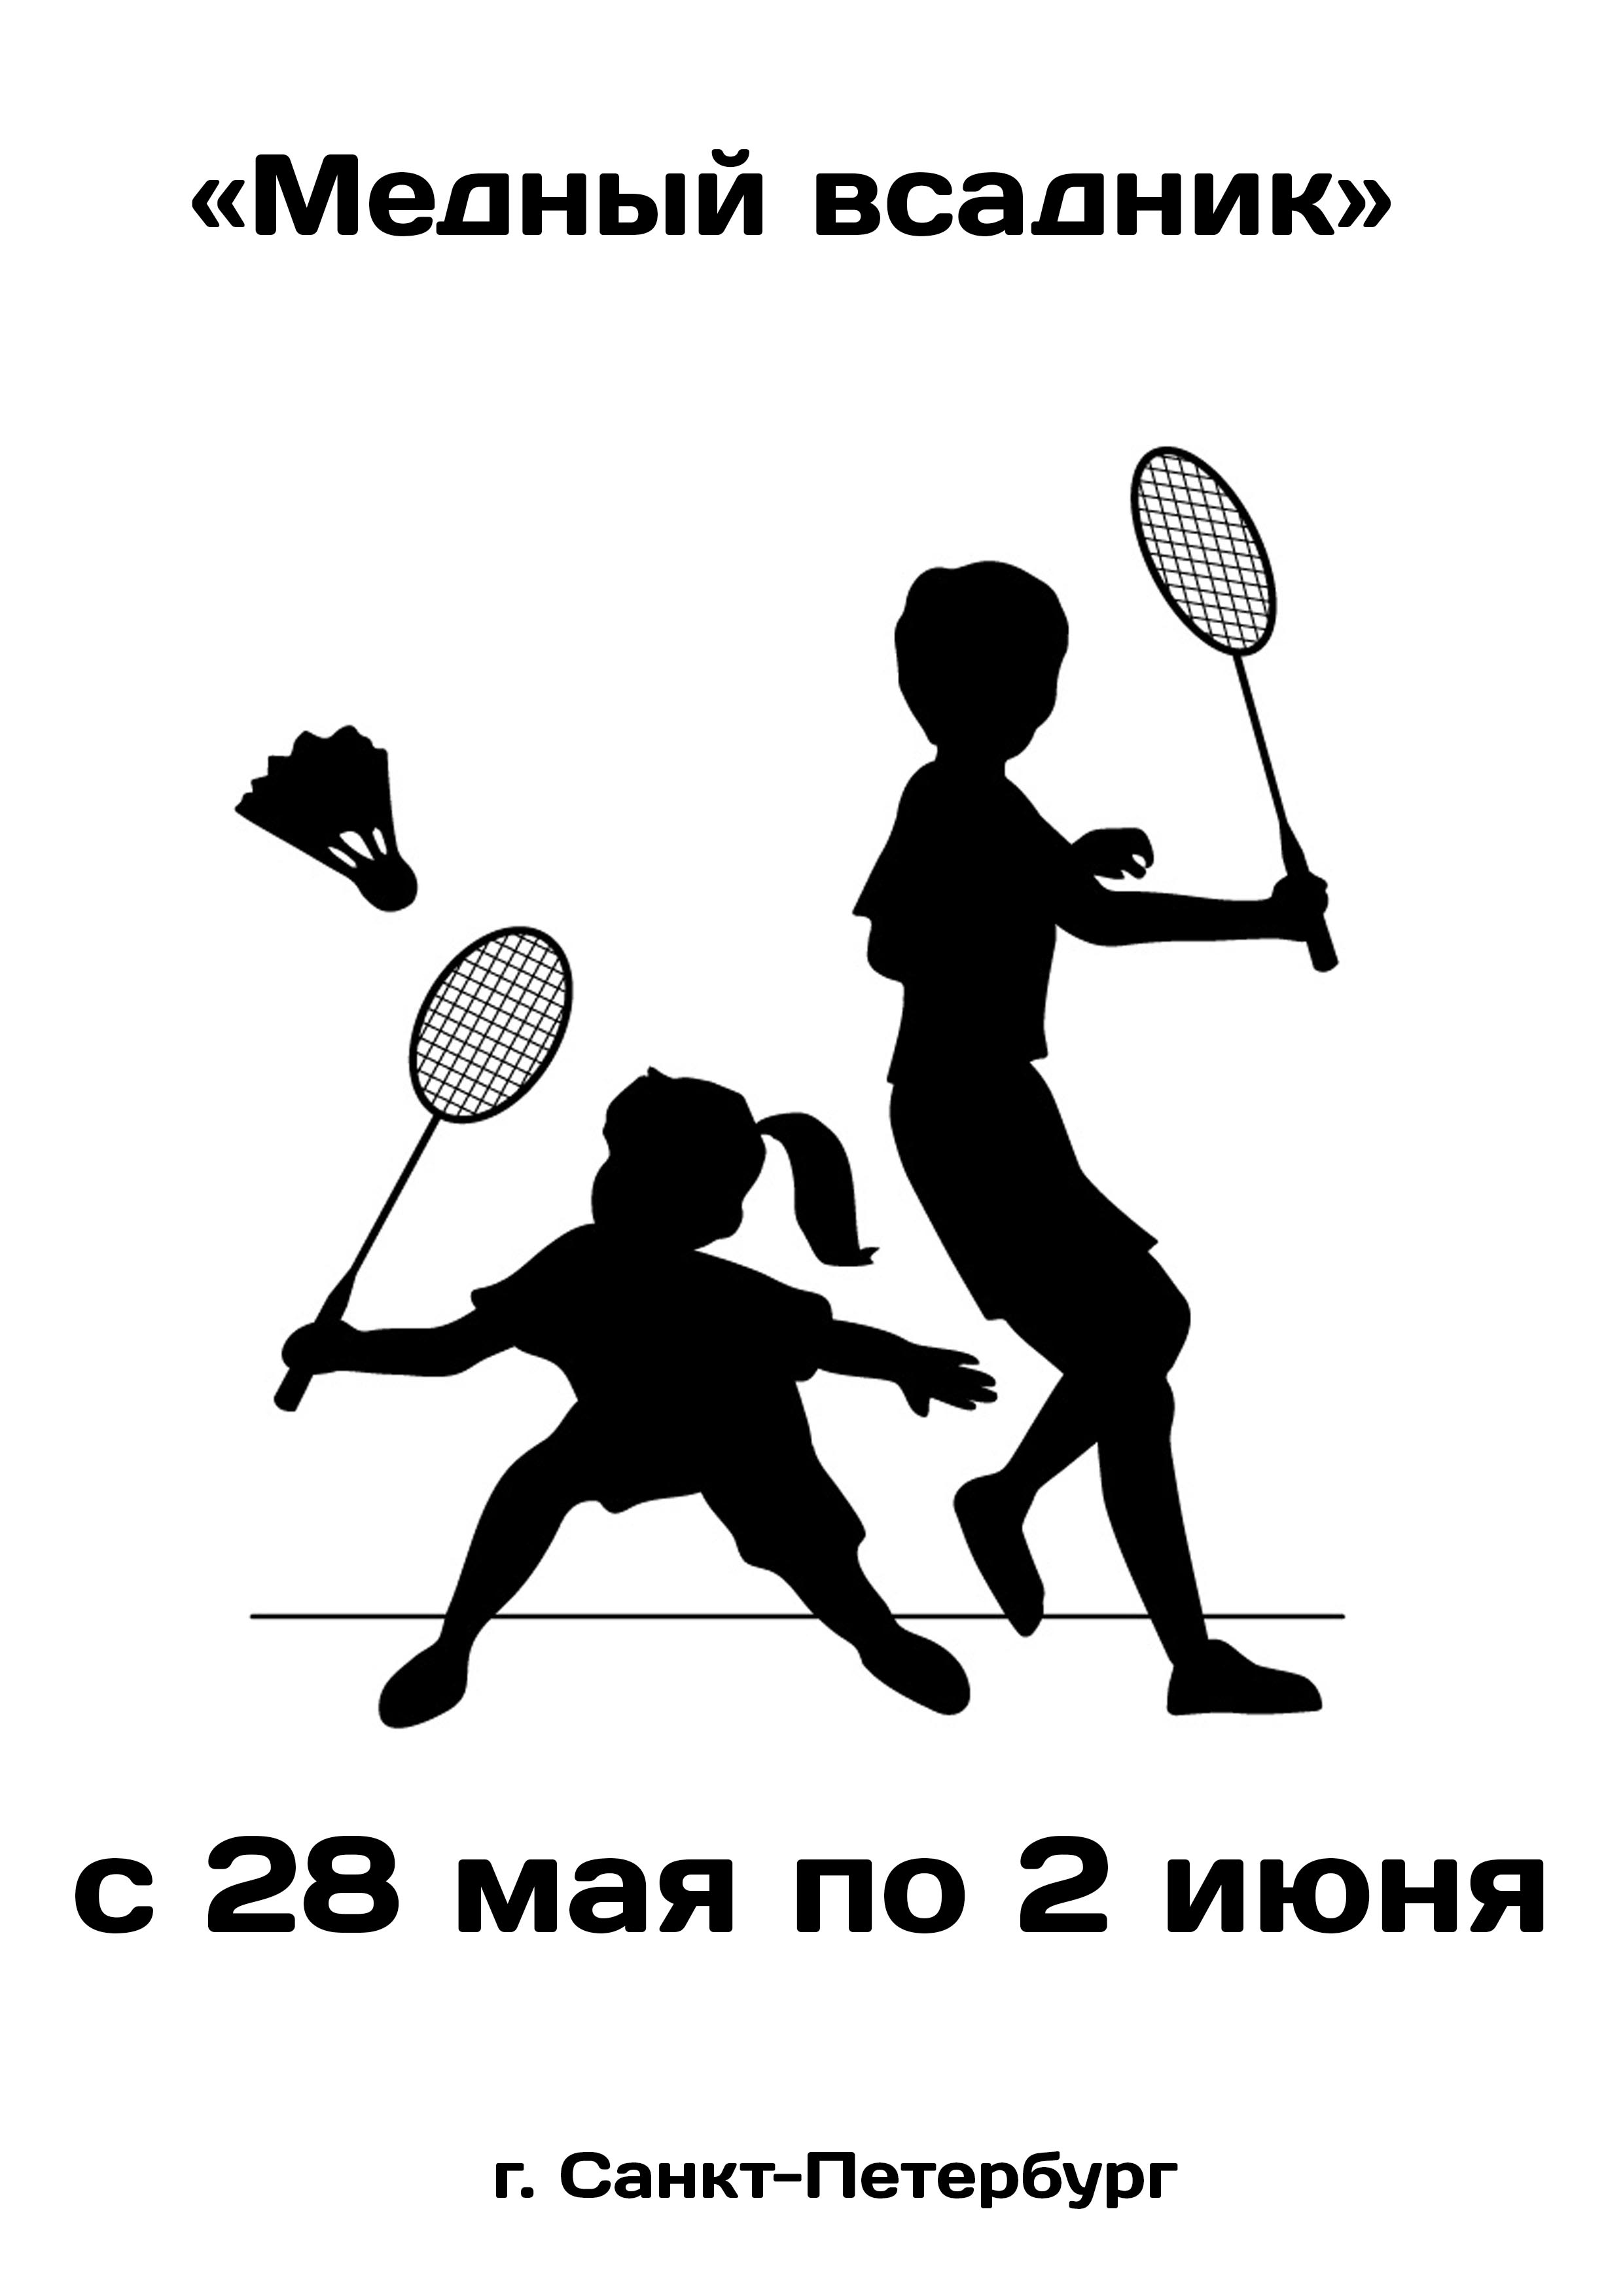 «Медный всадник»  соревнования по бадминтону 28  gegužės
 2023  metai
 